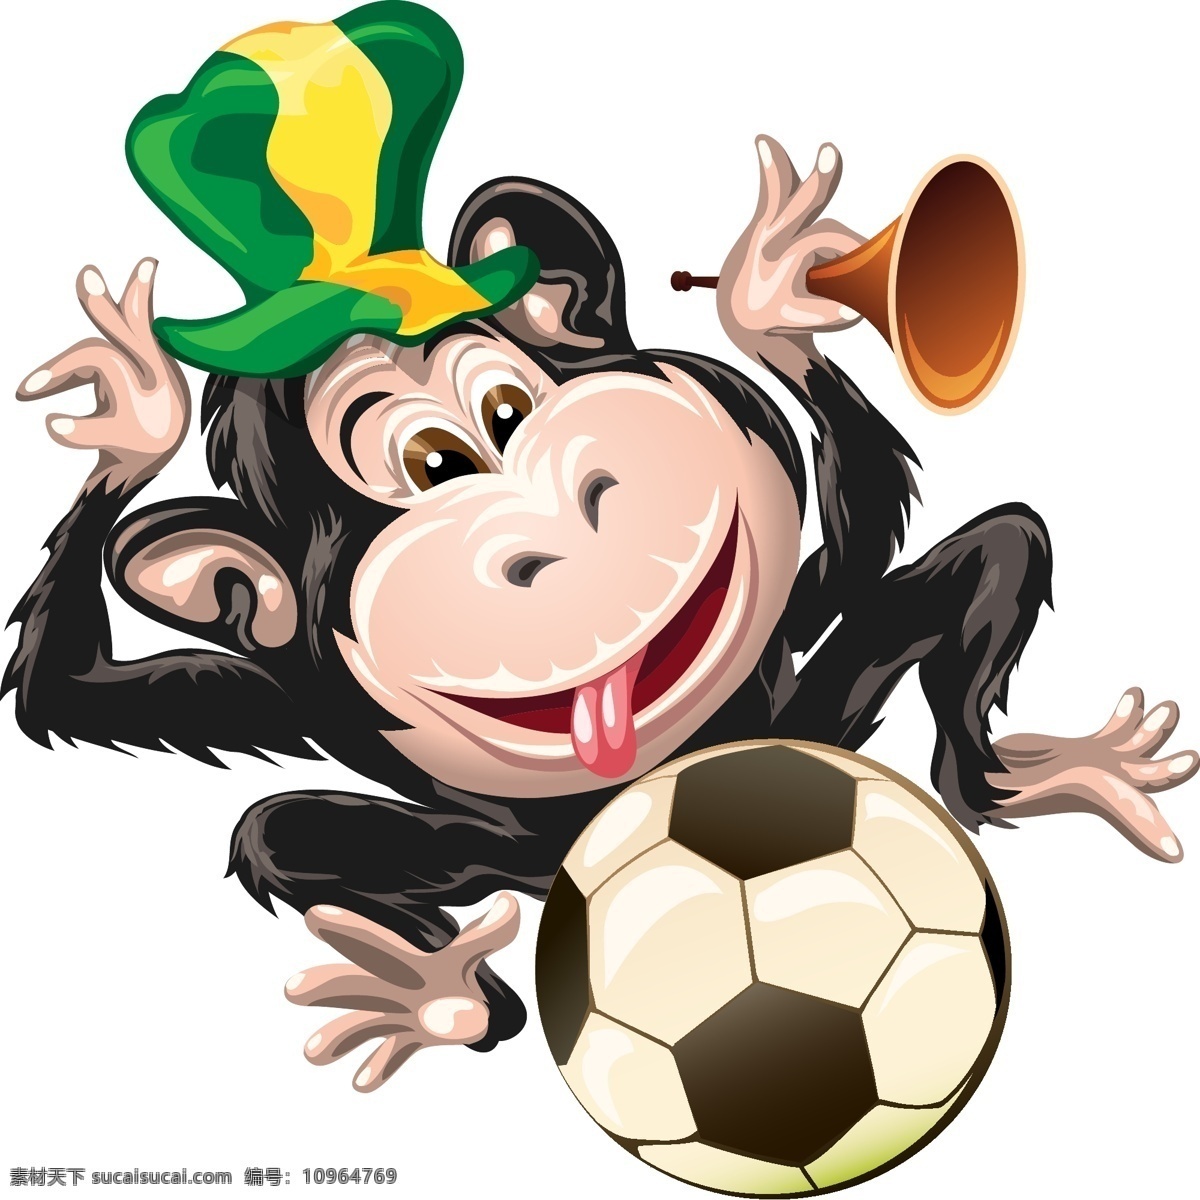 卡通 猴子 足球 模板下载 卡通猴子 巴西 世界杯 足球赛事 足球比赛 体育运动 生活百科 矢量素材 白色